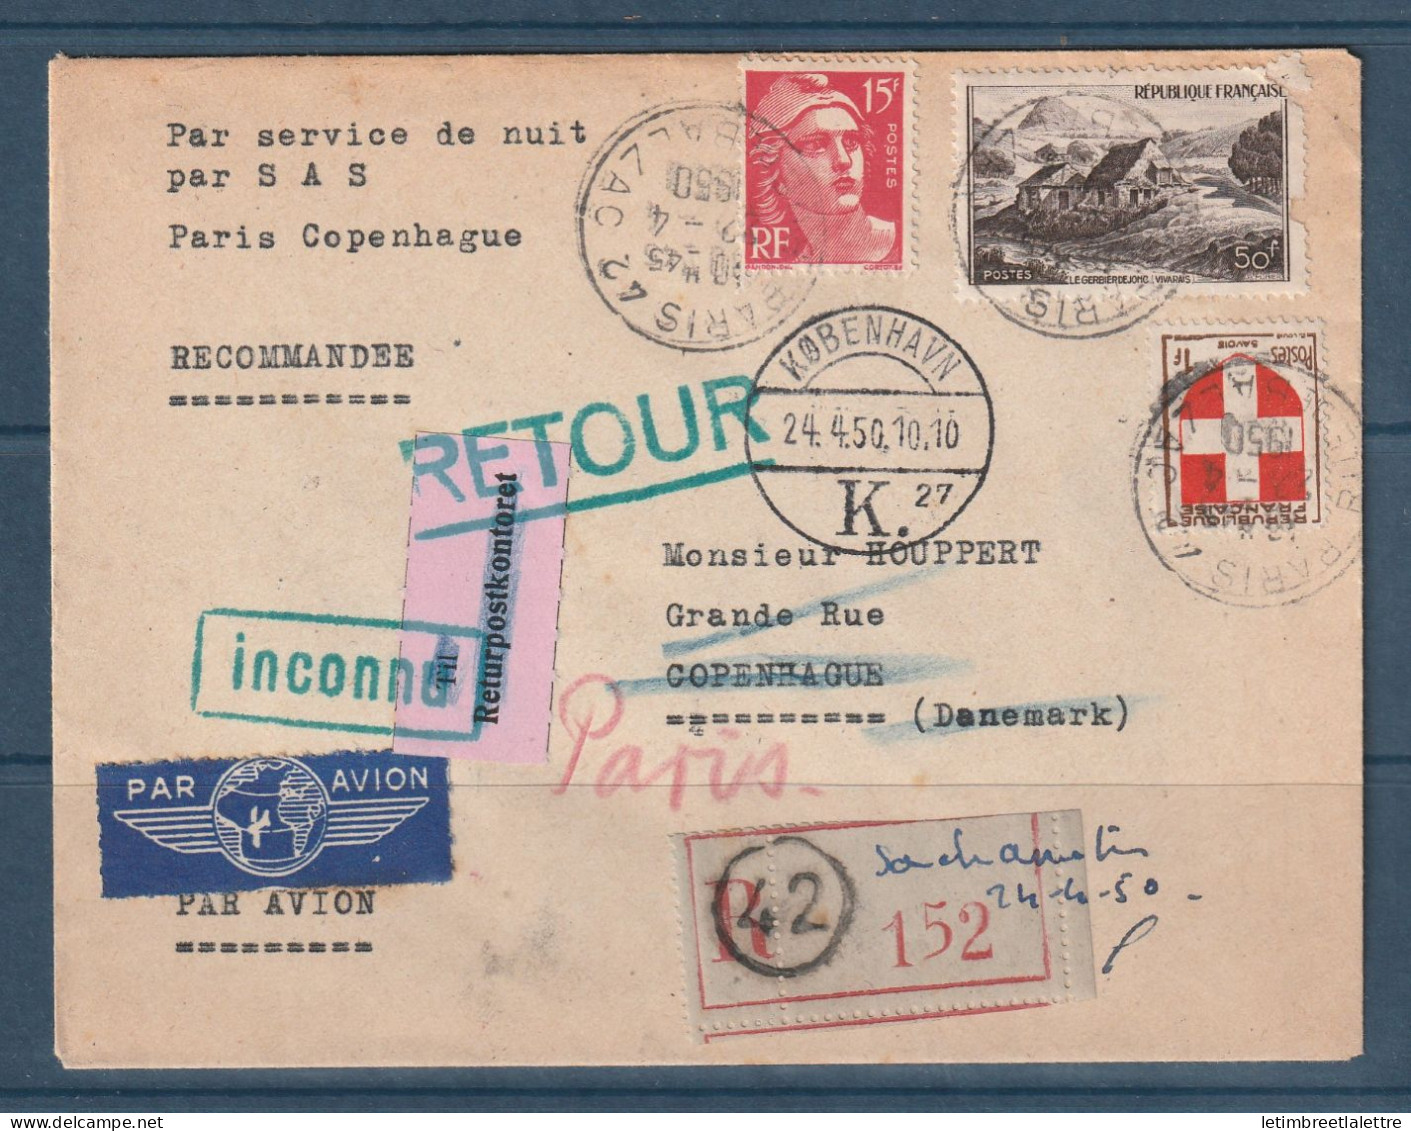 France - Service De Nuit Par SAS - Paris Copenhague - Retour à L'envoyeur En Recommandé - 1950 - First Flight Covers